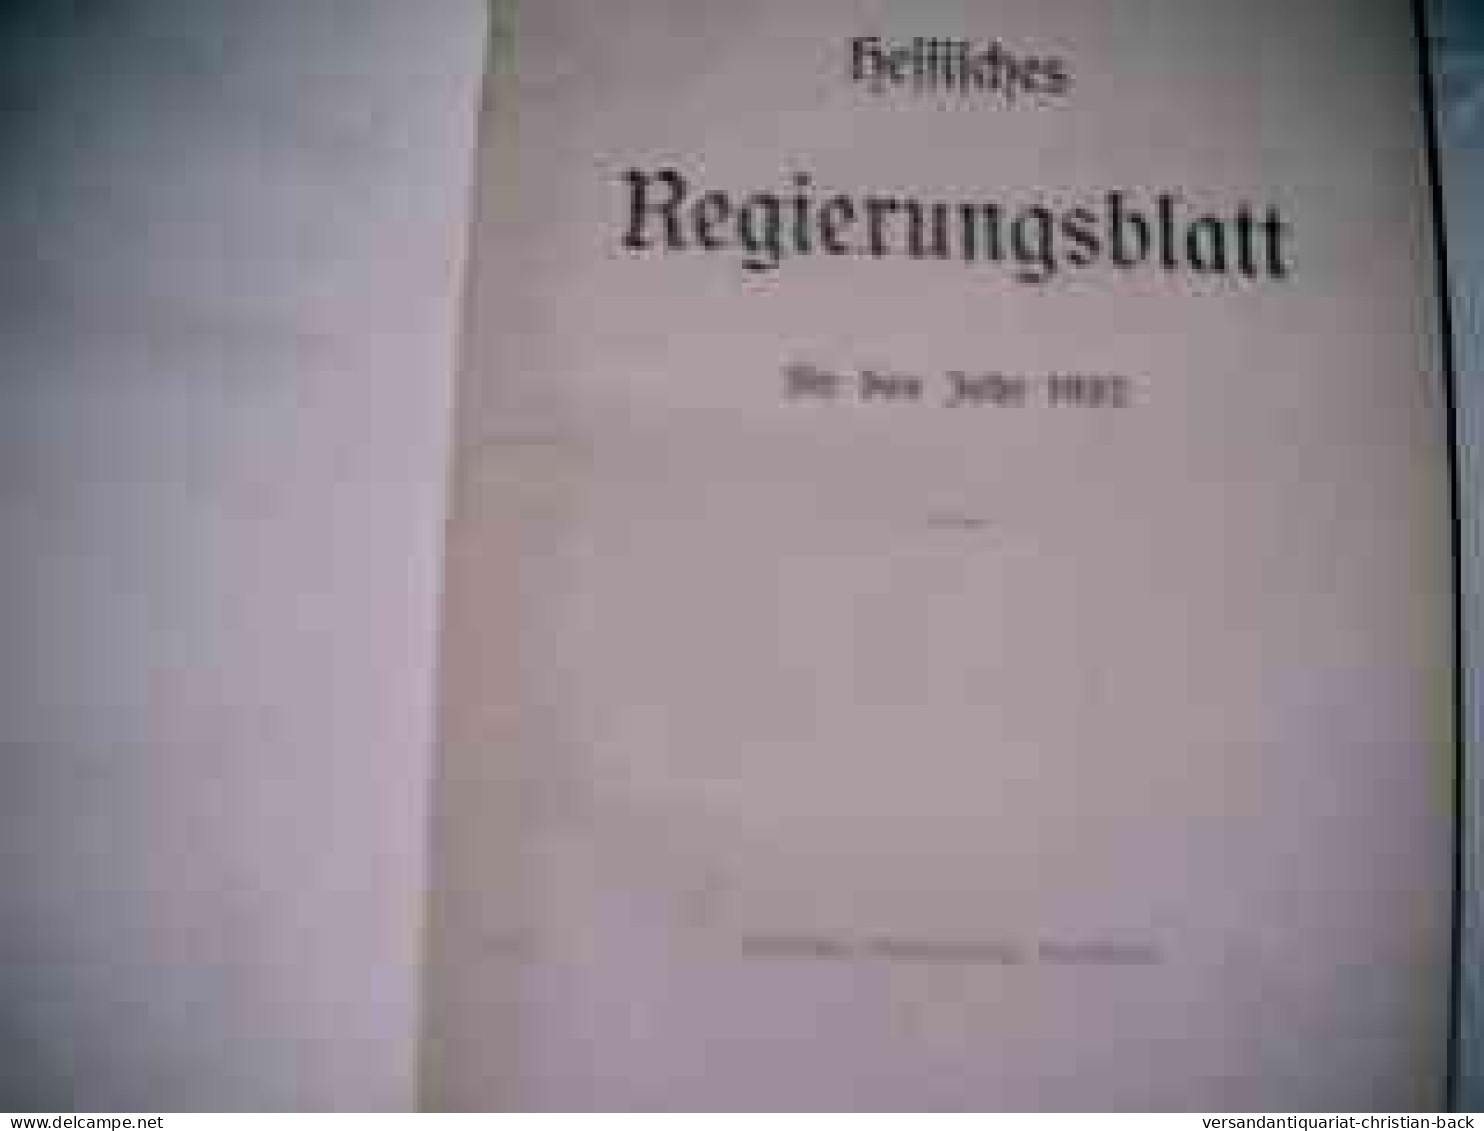 Hessisches Regierungsblatt Für Das Jahr 1937 - Derecho